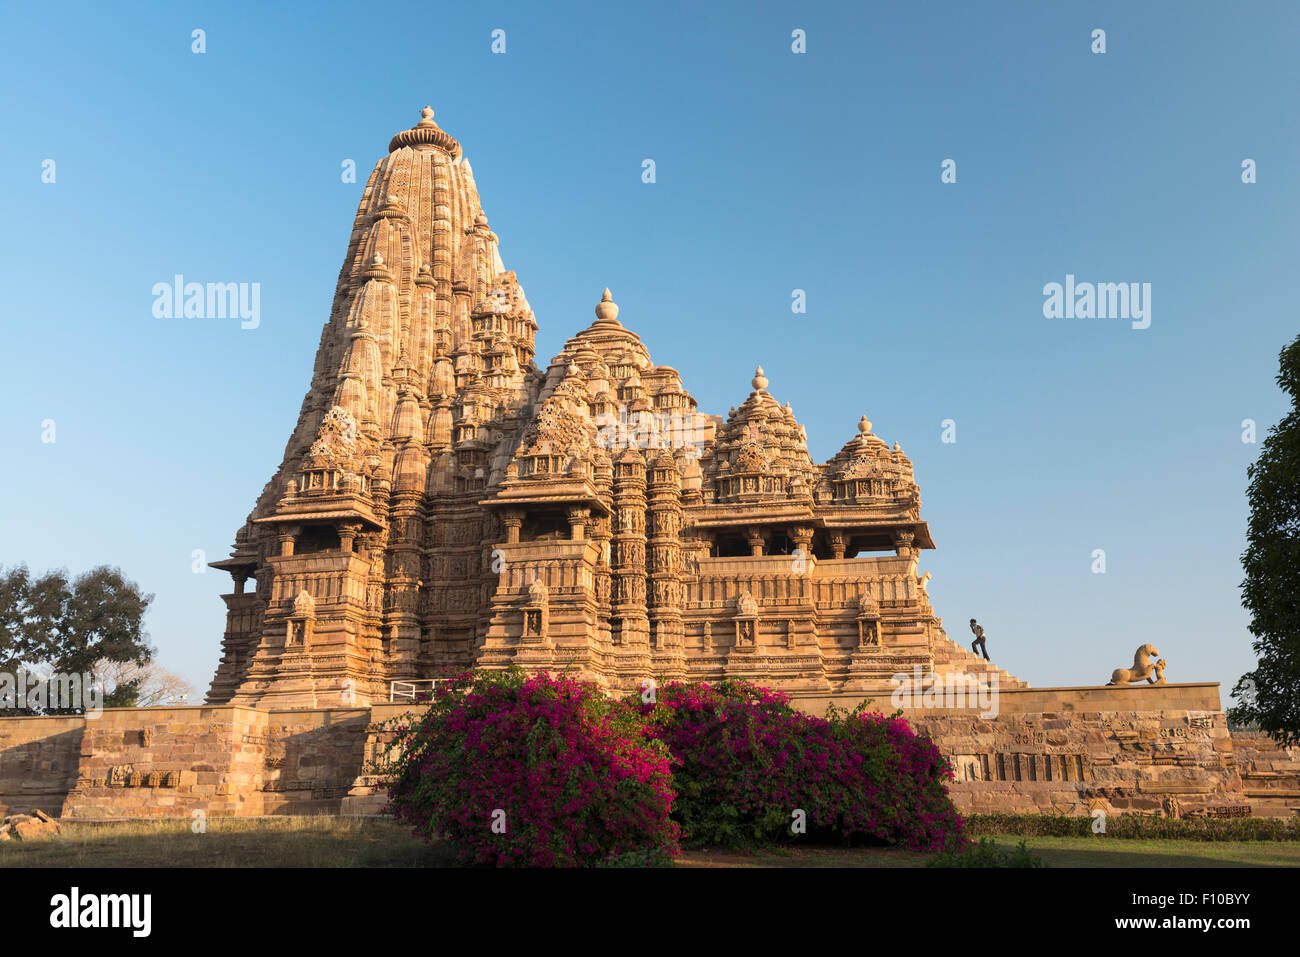 The Kandariya Mahadeva Temple, Khajuraho, Madhya Pradesh, India Stock Photo